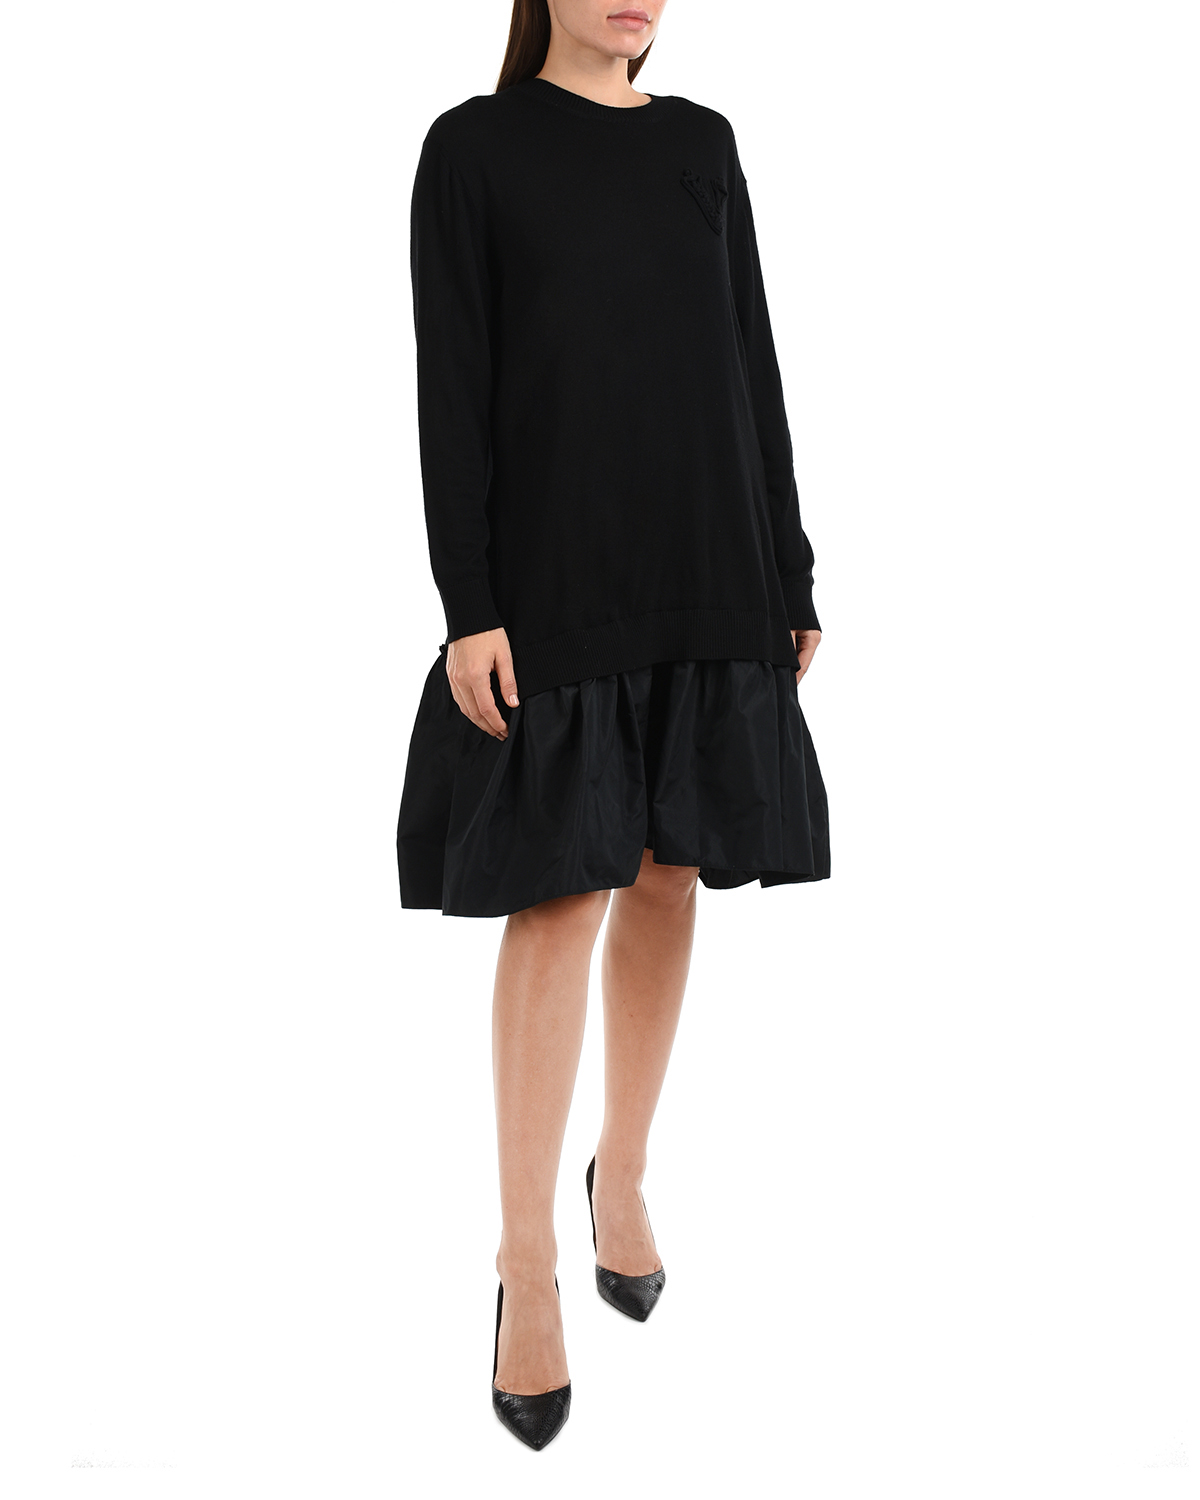 Трикотажное платье черного цвета Vivetta, размер 42 - фото 2